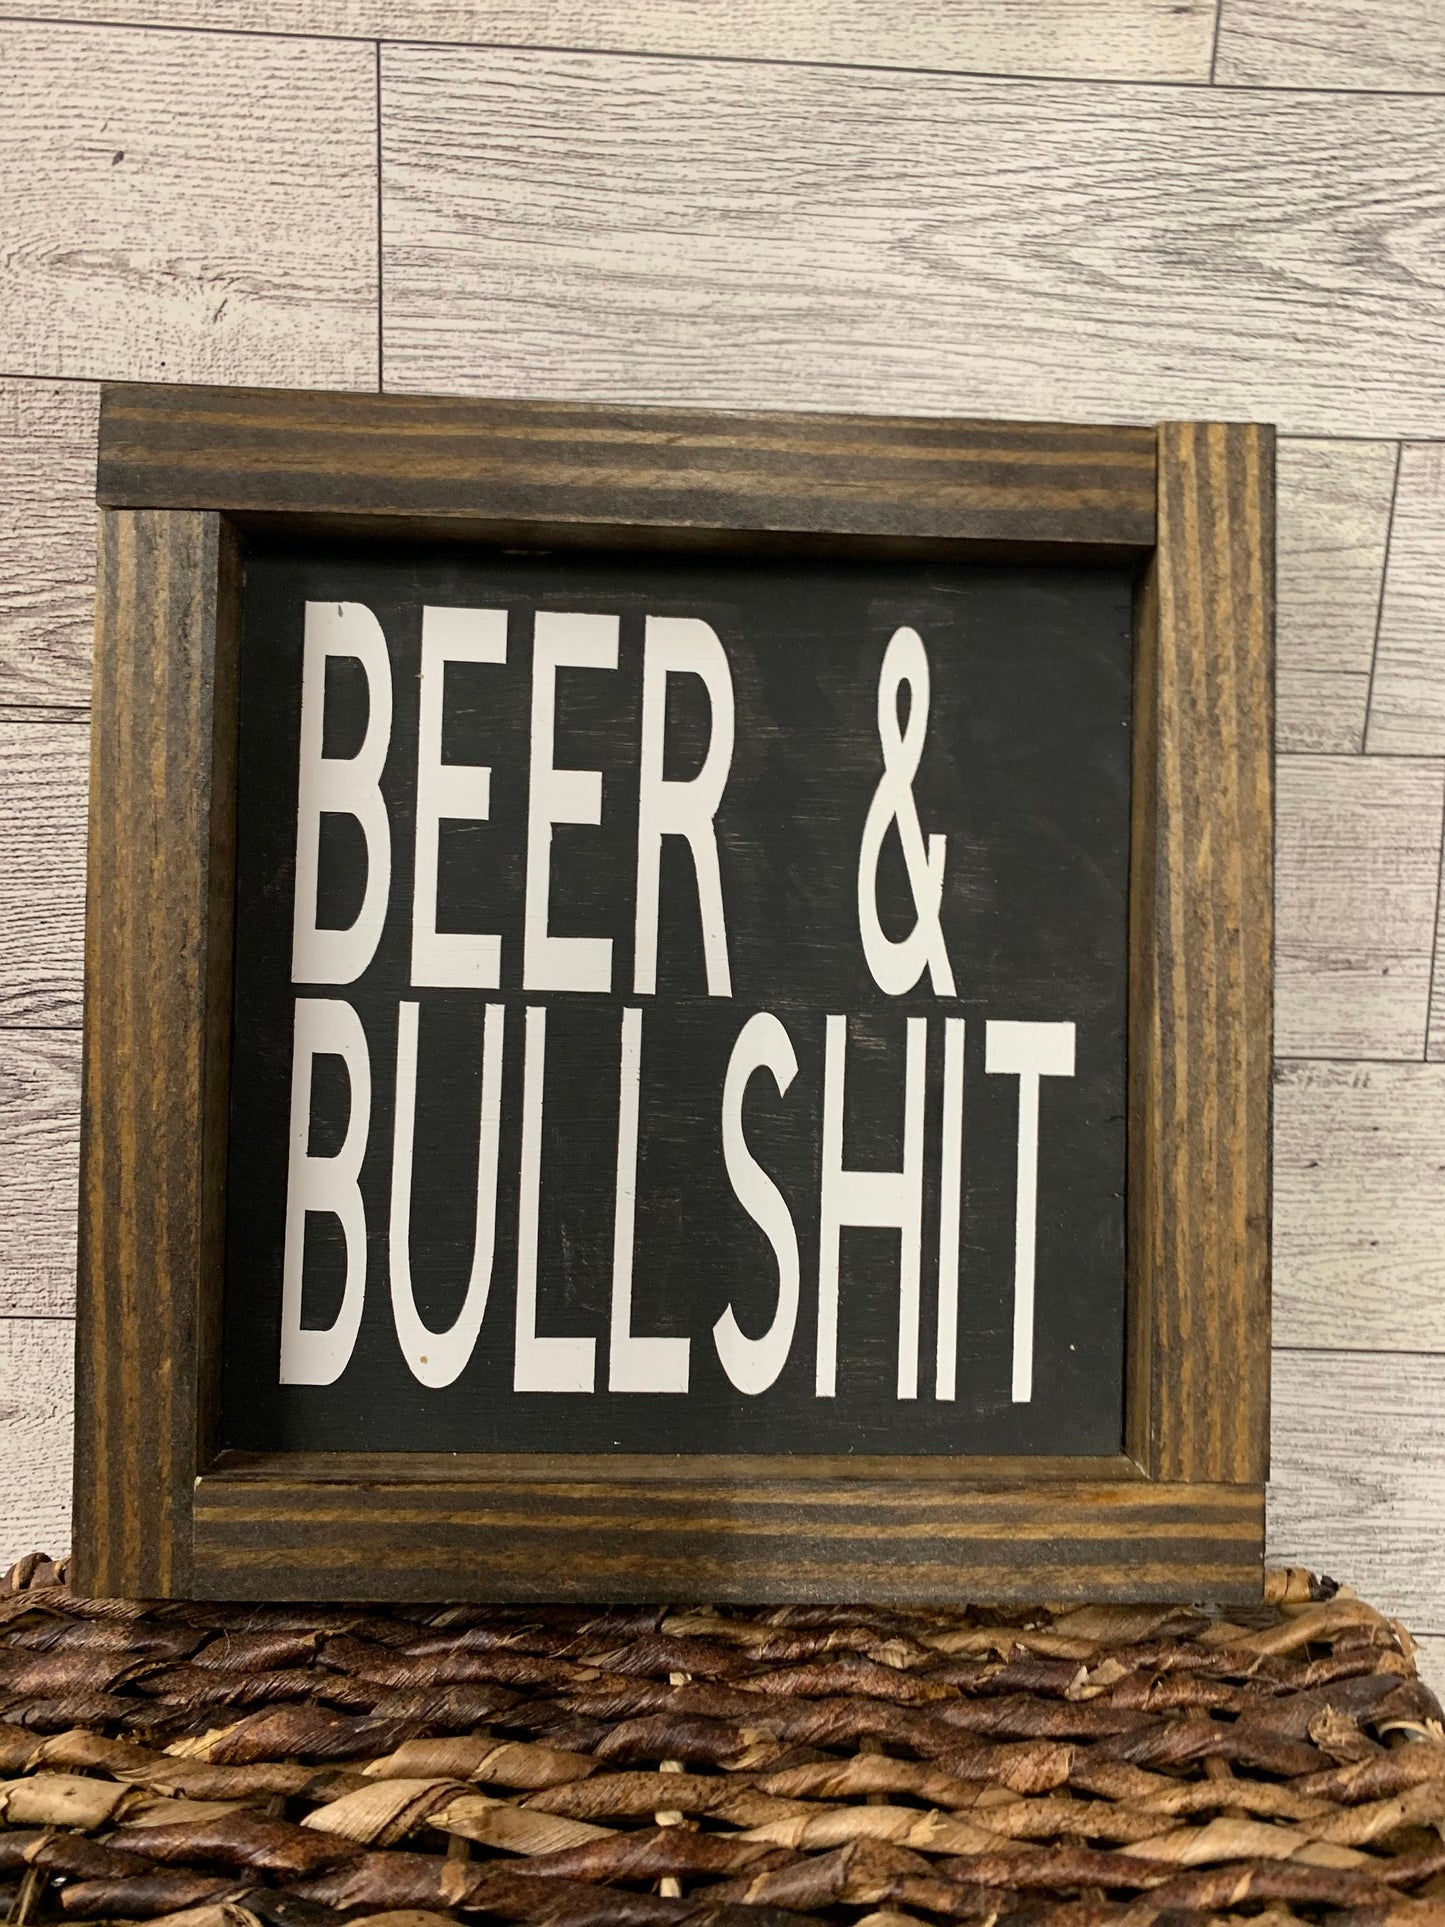 Beer & Bullshit